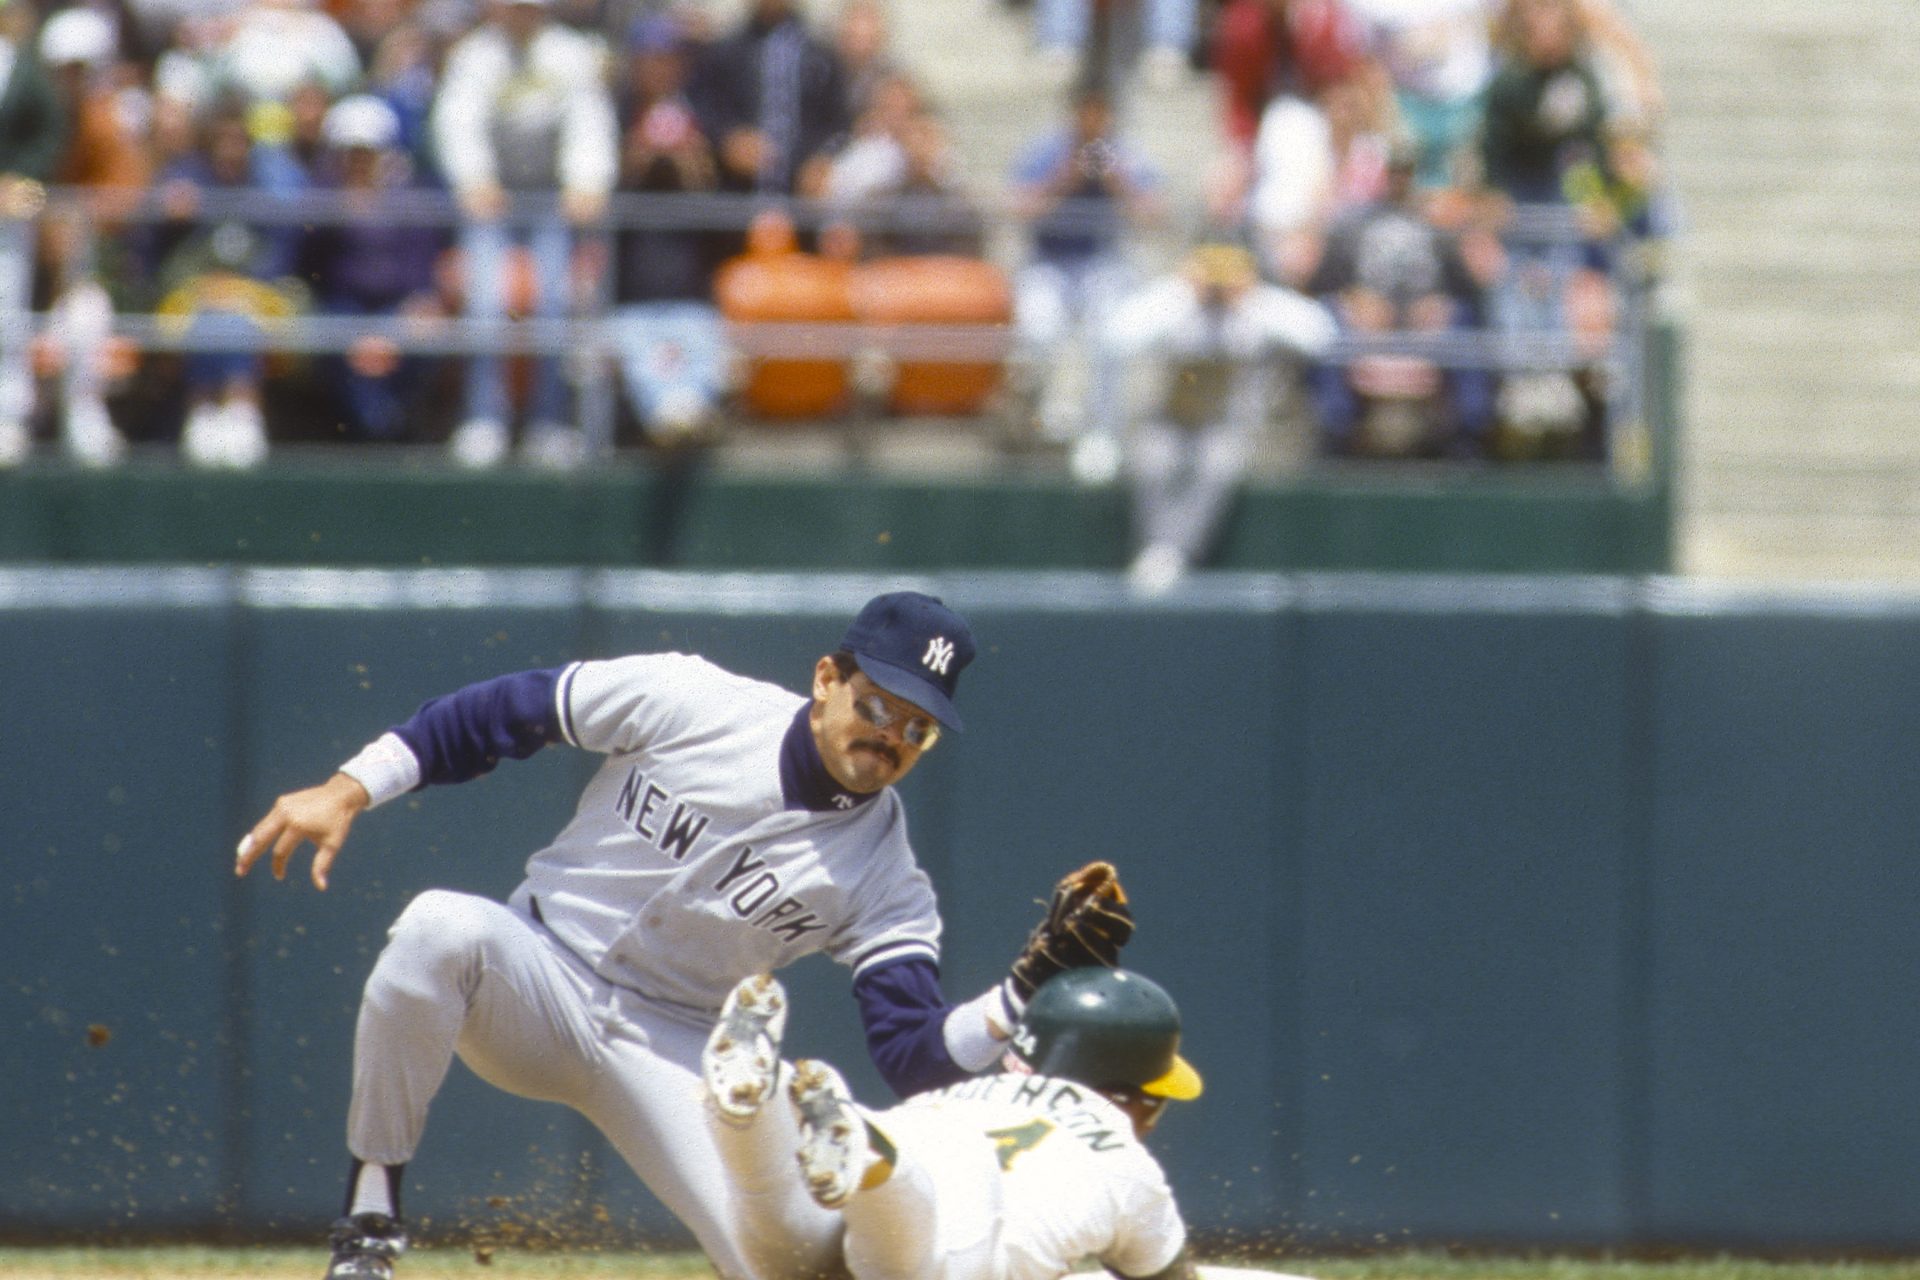 6 - 1989: New York Yankees trade Rickey Henderson to the Oakland Athletics